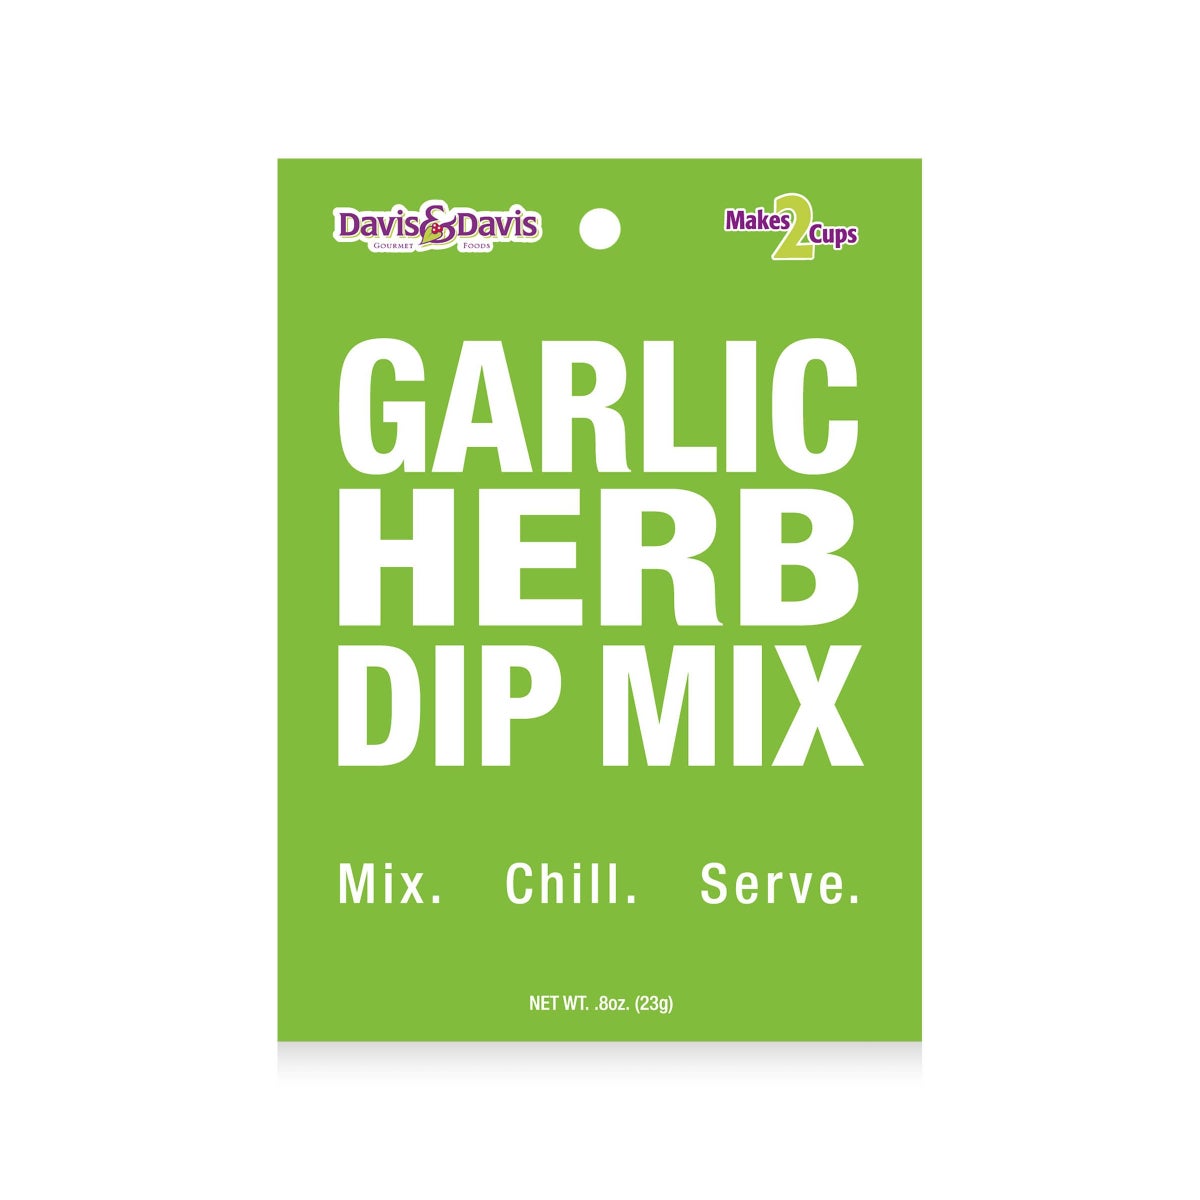 Dip Mix - Garlic Herb